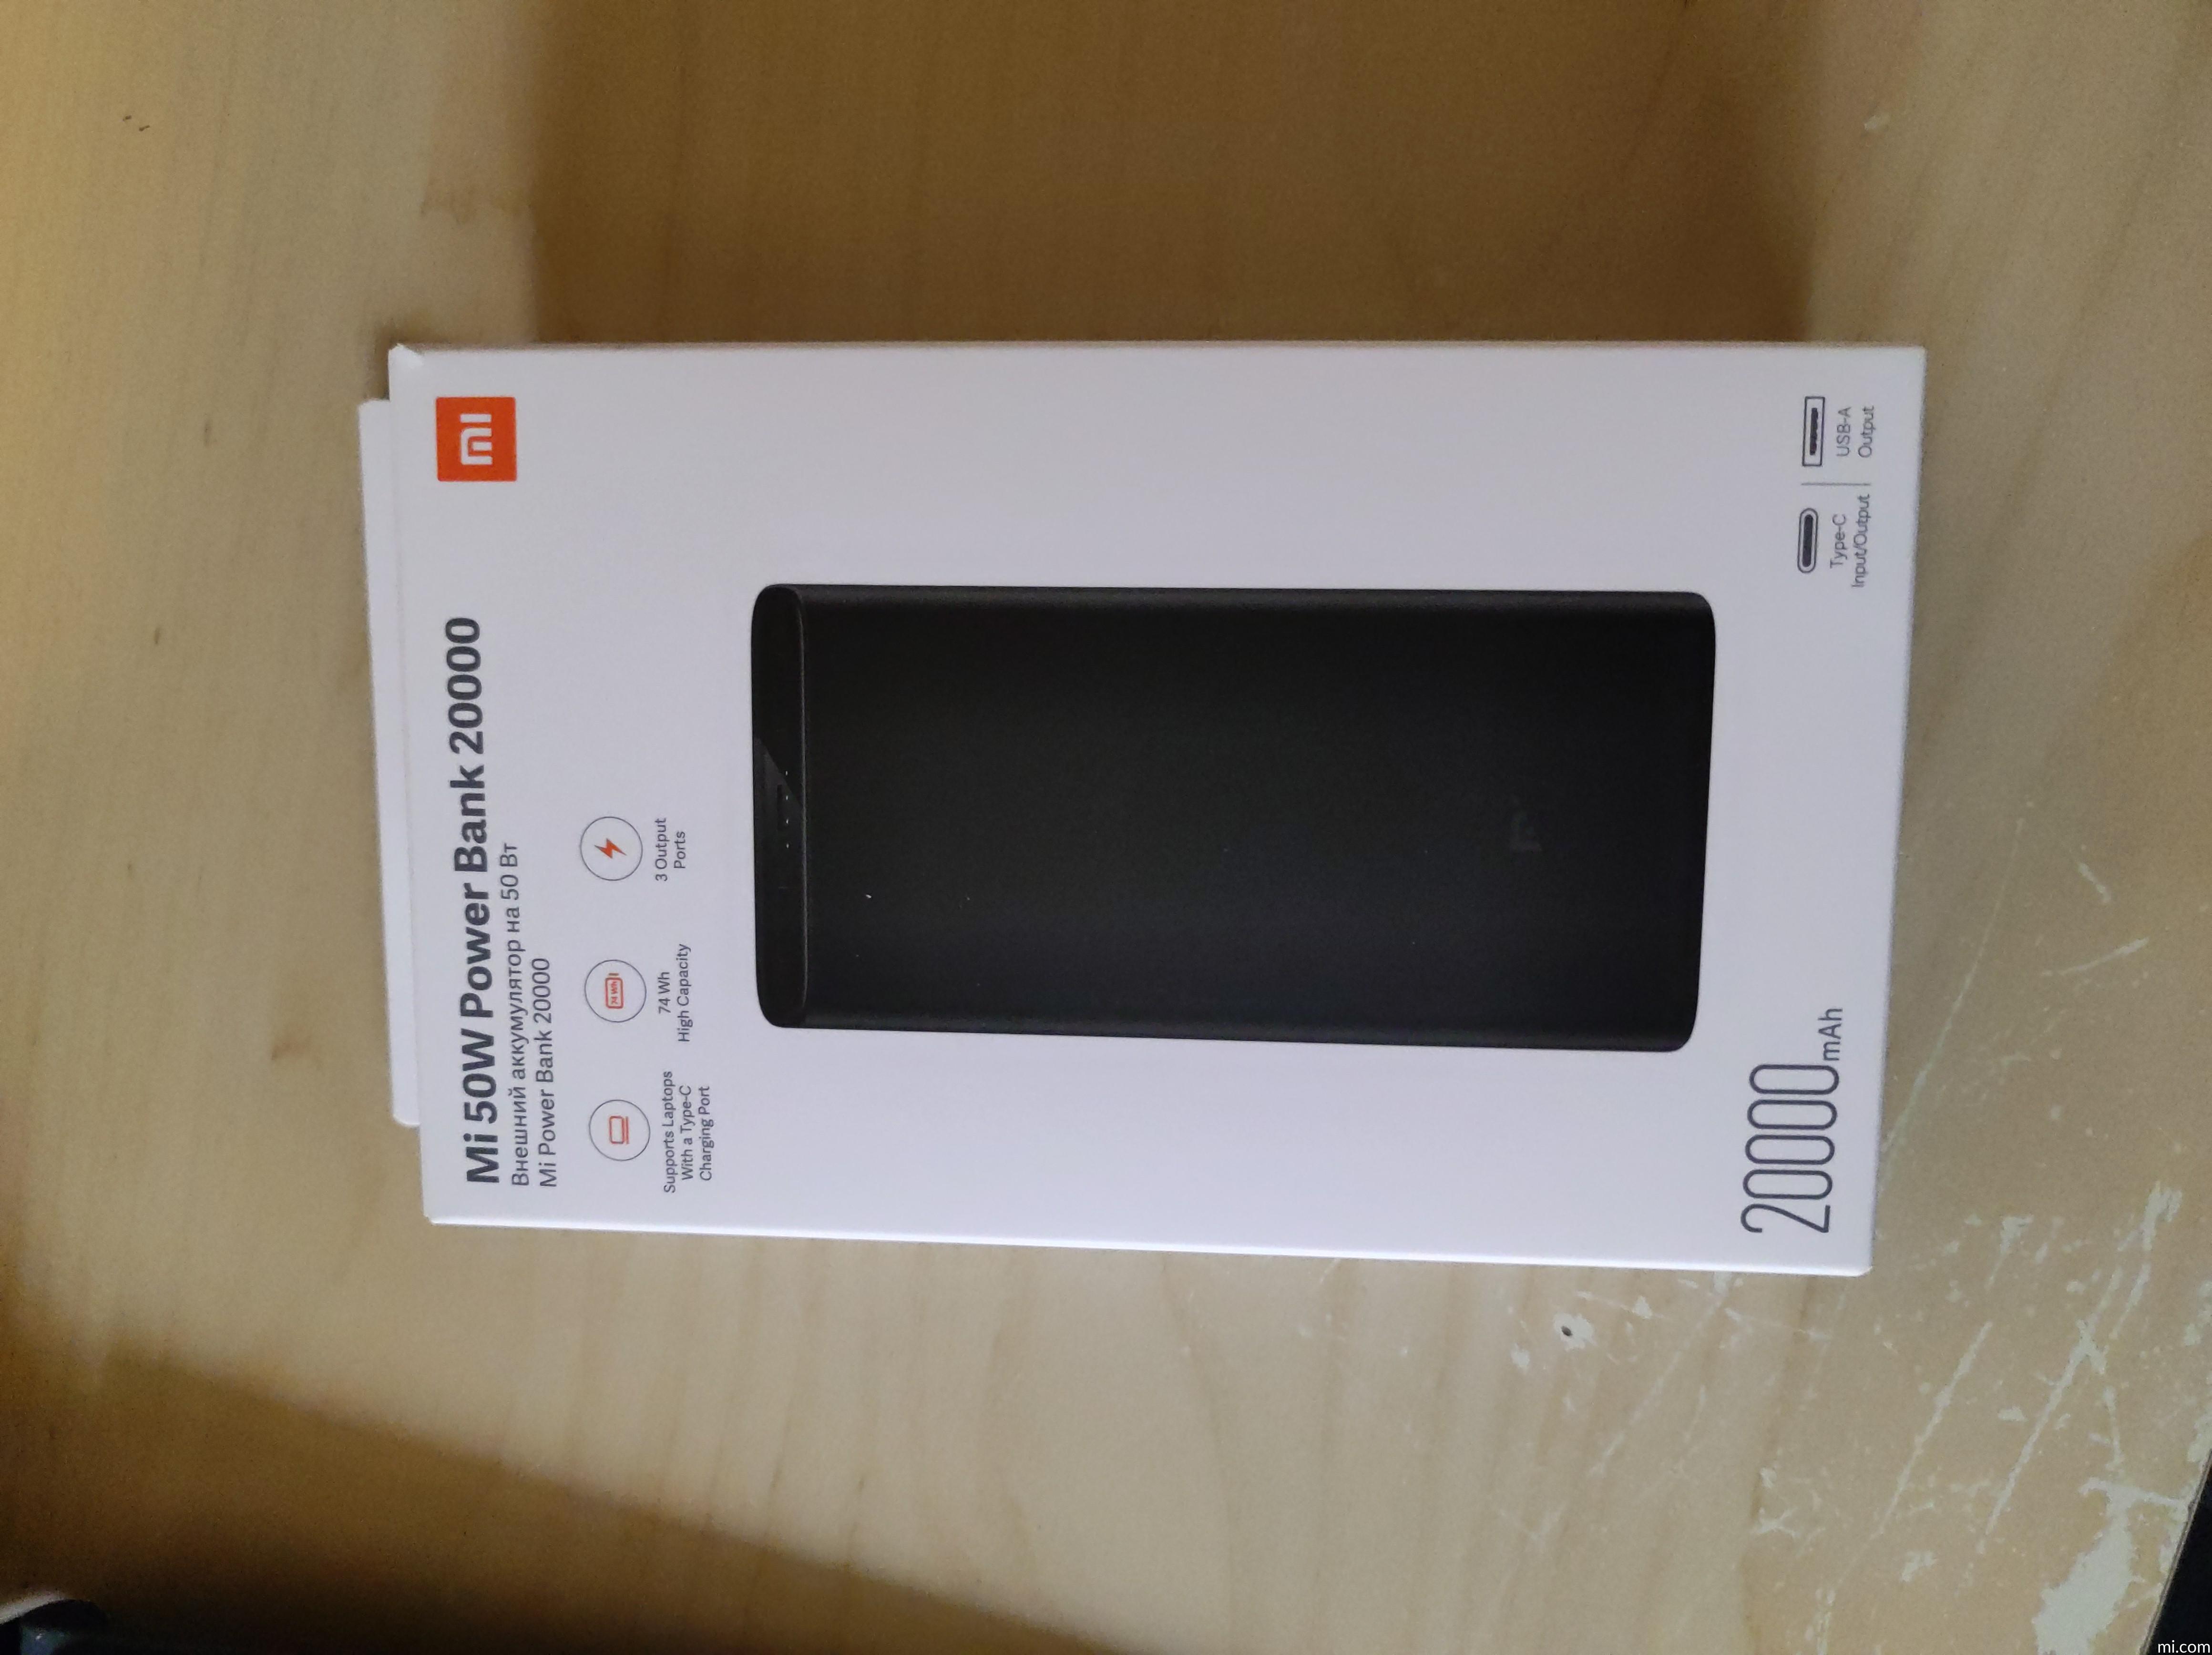 Xiaomi nos sorprende con otra batería externa de 20.000 mAh y carga rápida  por 22 euros